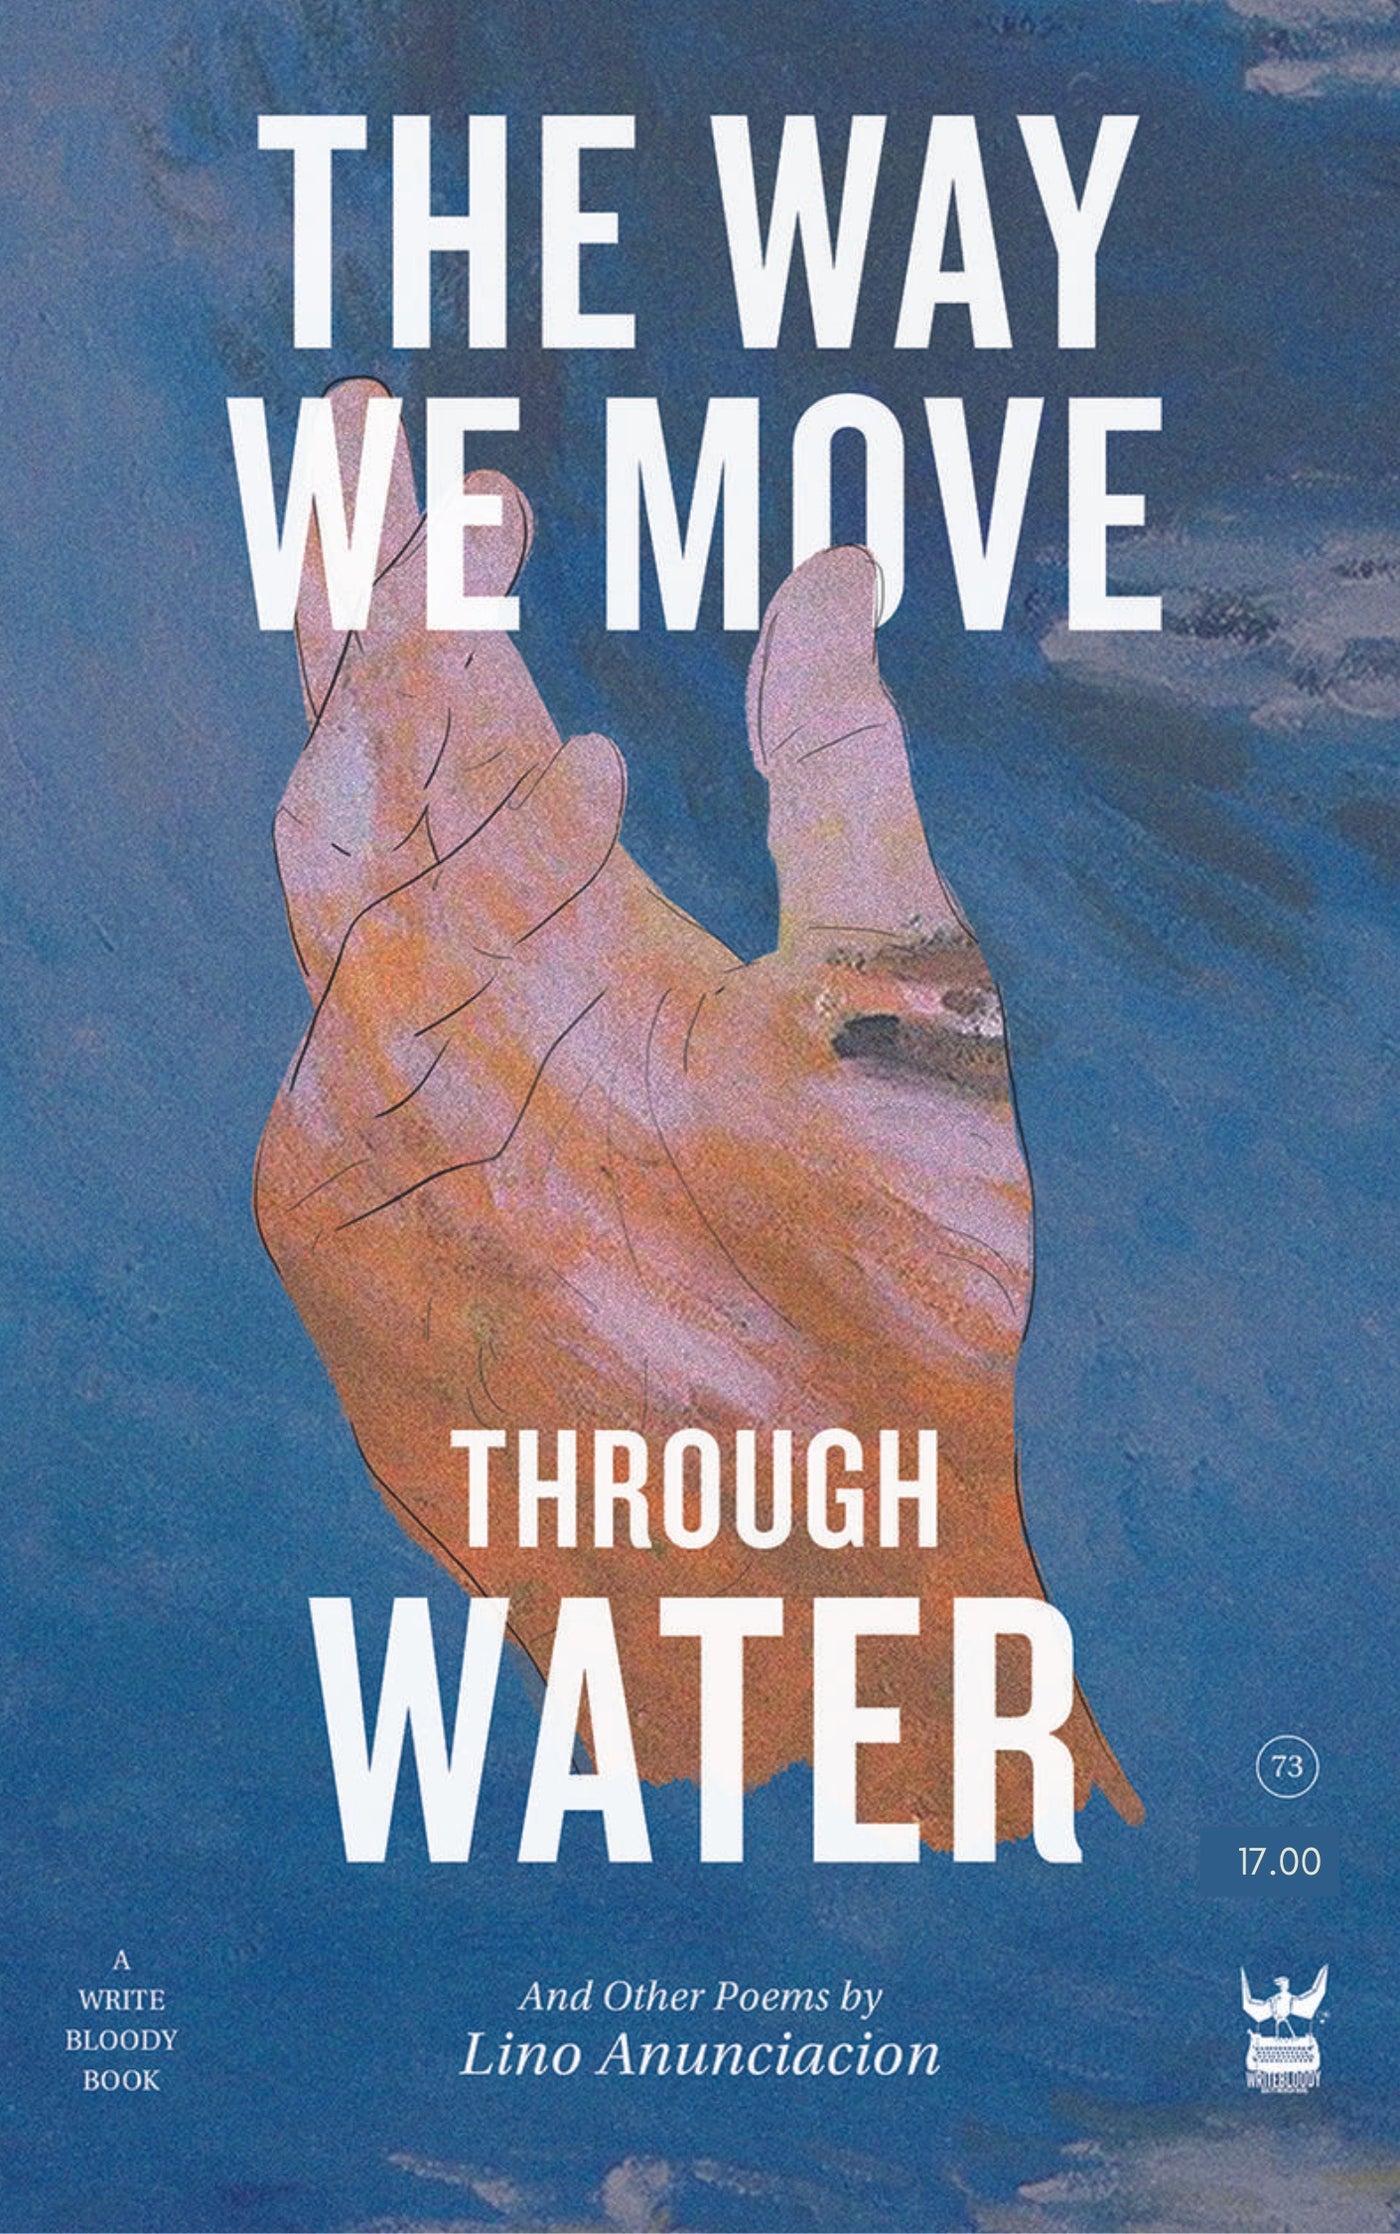 The Way We Move Through Water by Lino Anunciacion